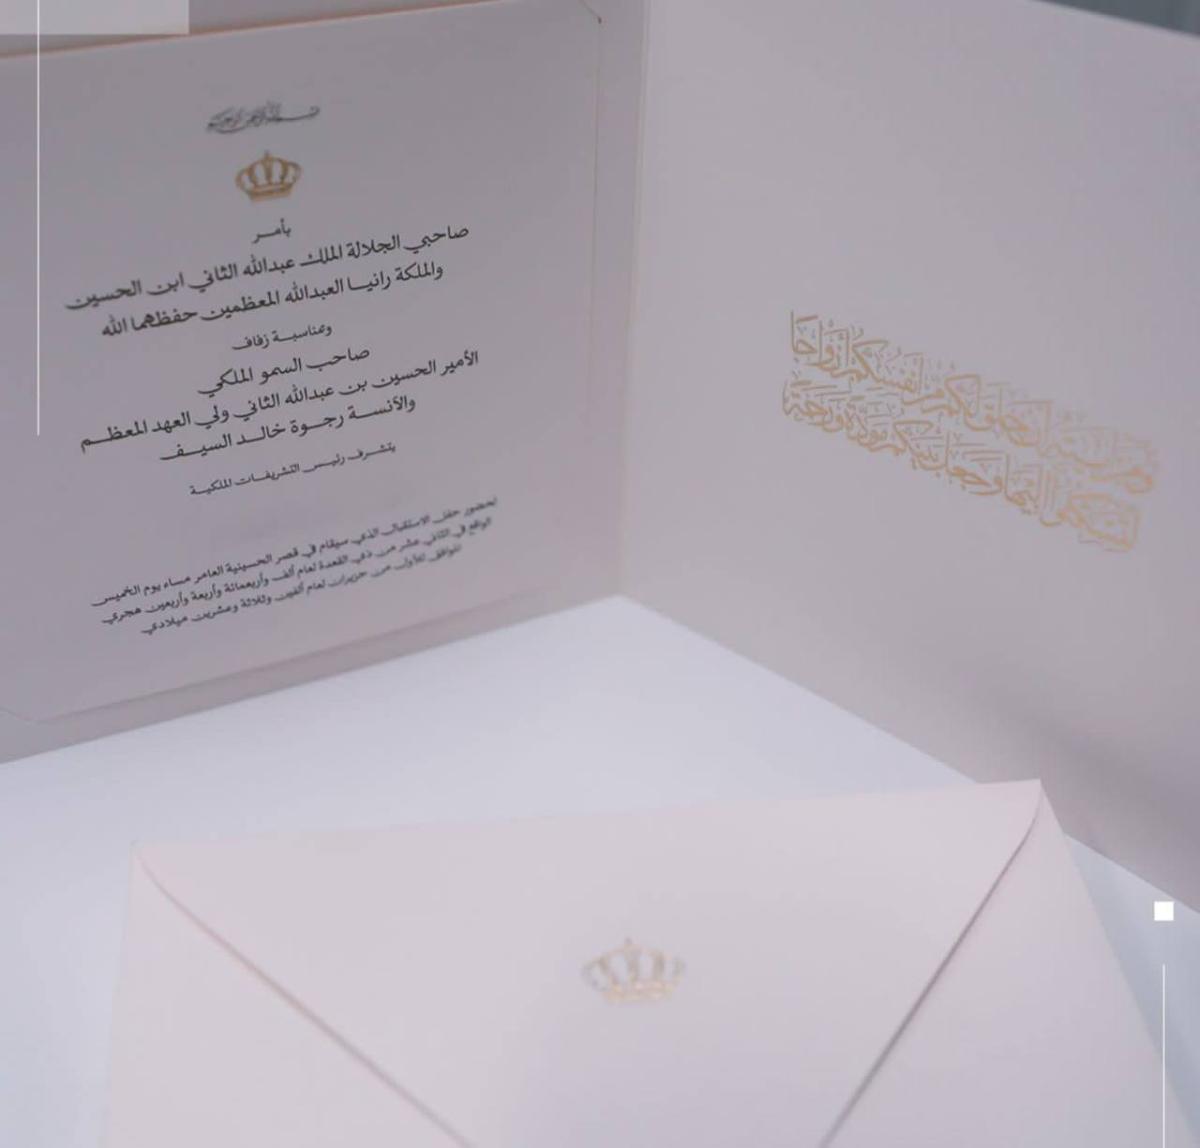 تفاصيل حفل زفاف ولي عهد الأردن الأمير الحسين 2